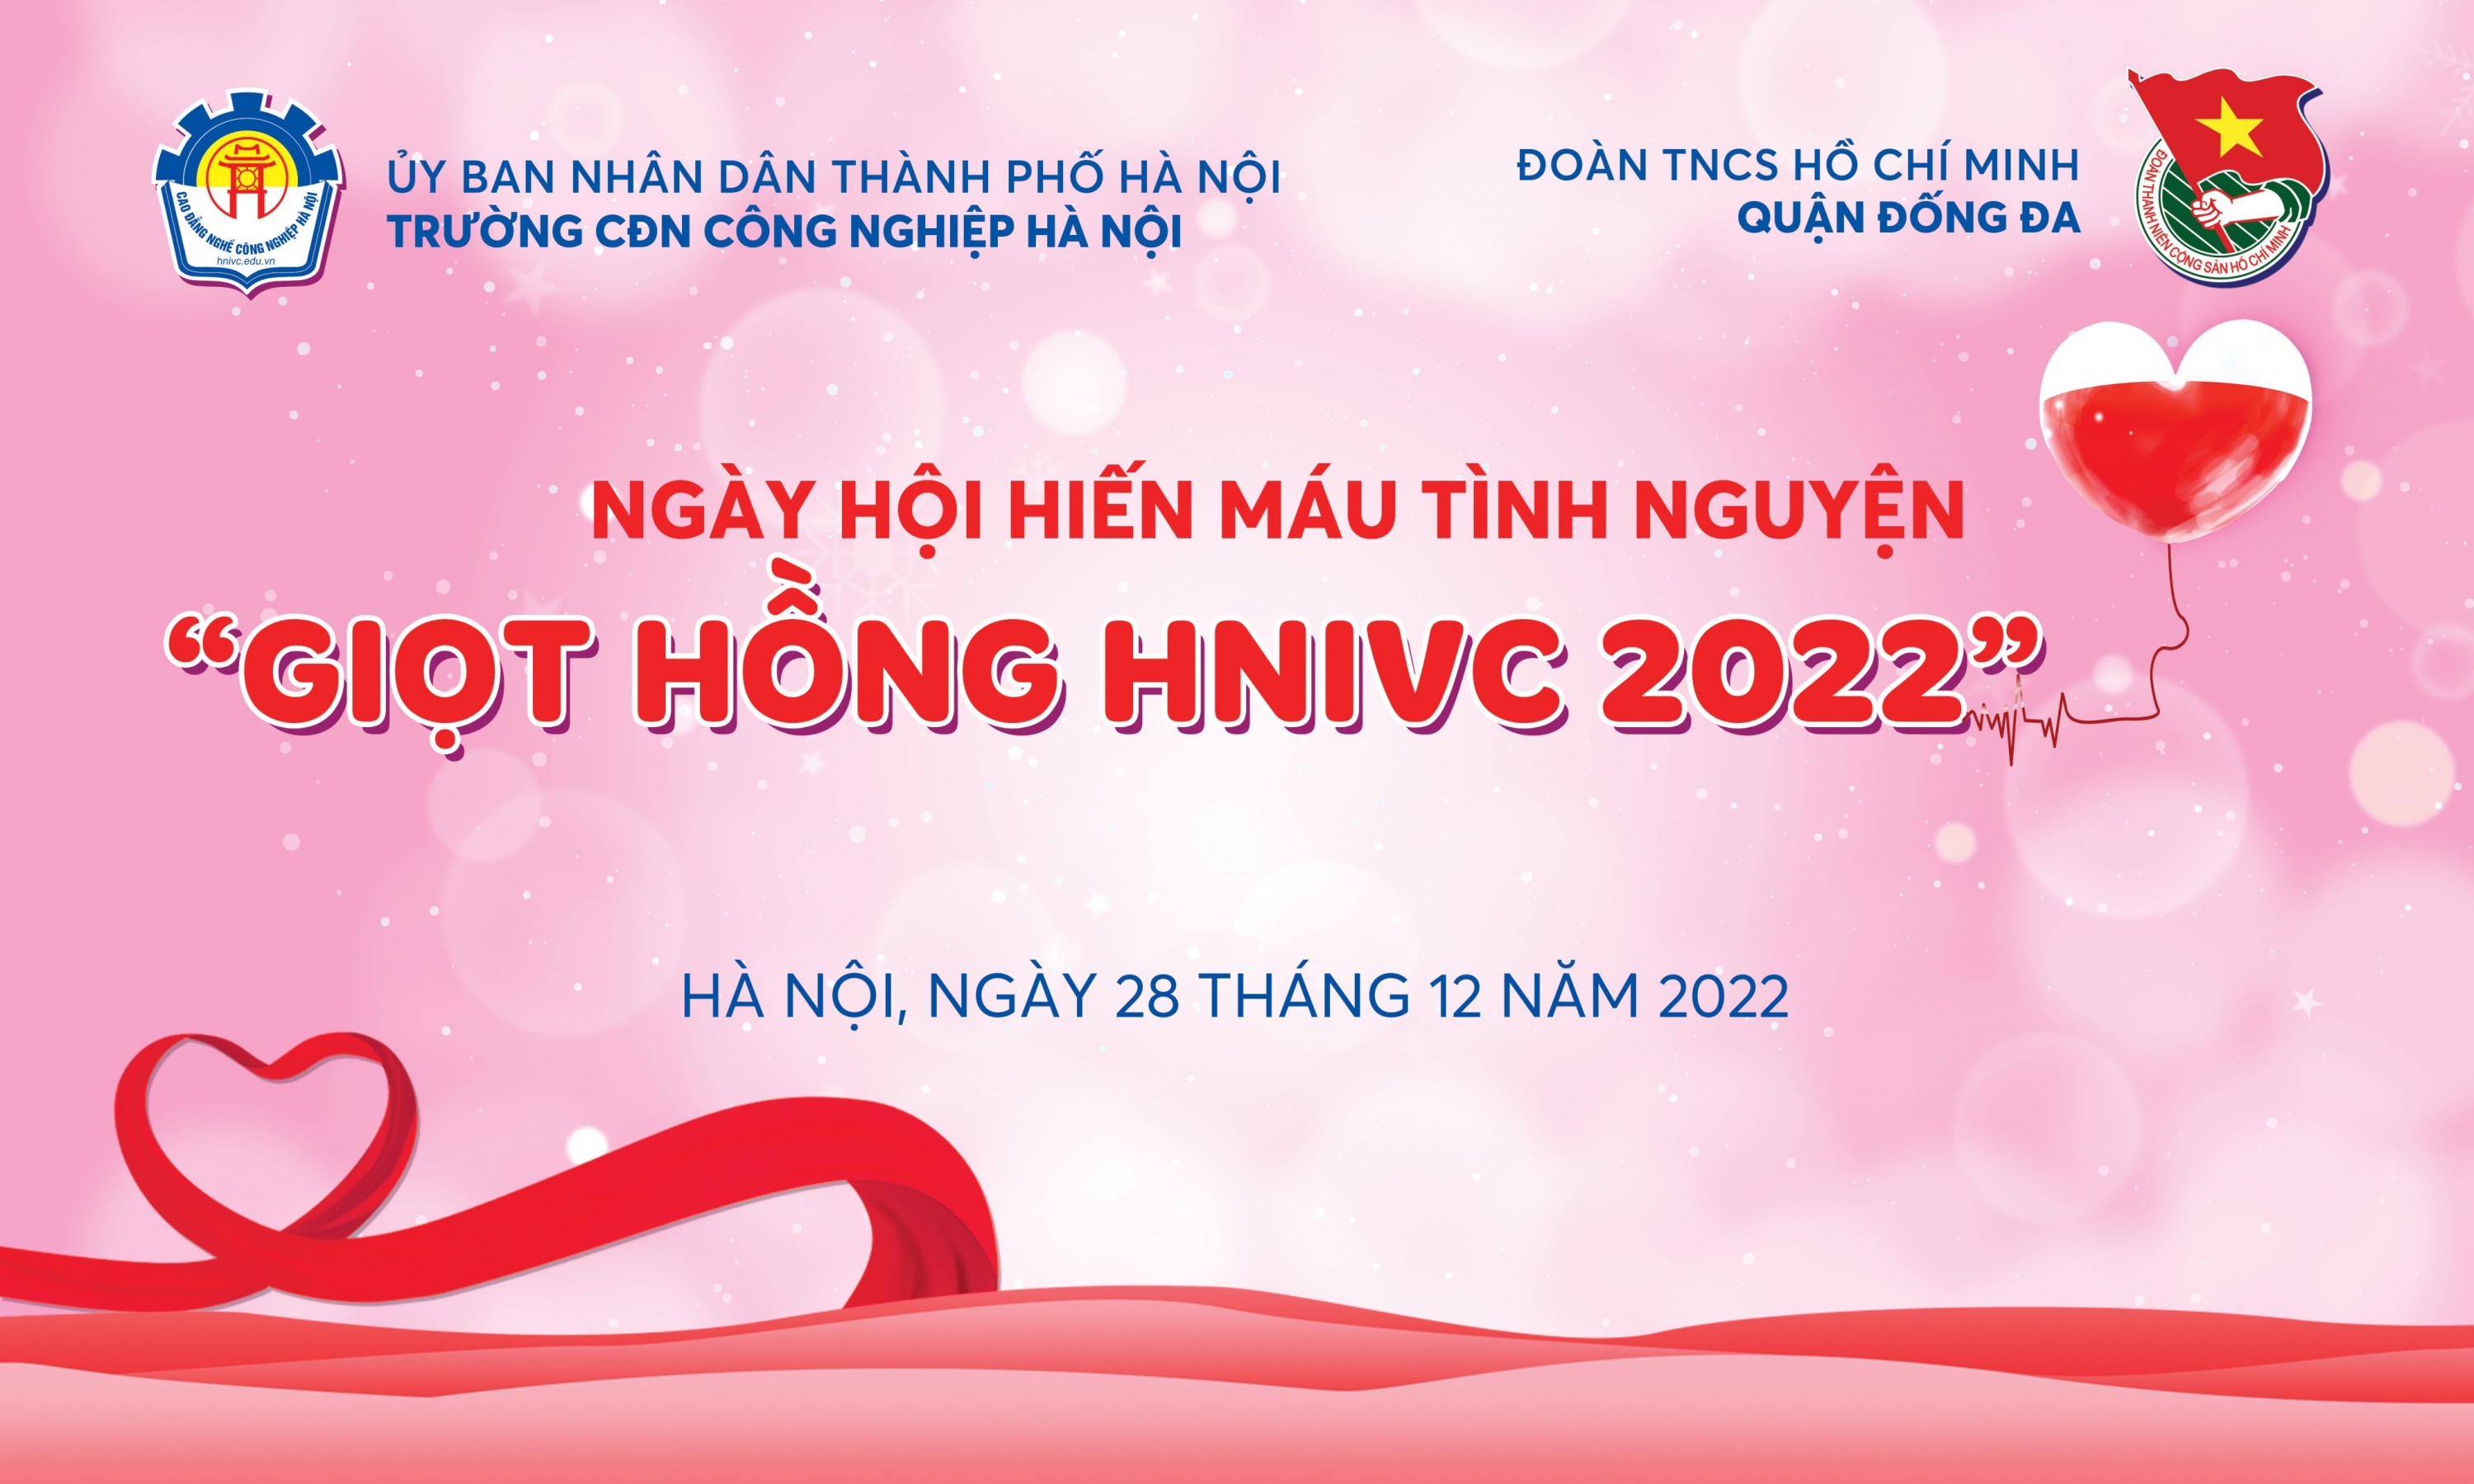 Tổ chức ngày hội hiến máu tình nguyện “giọt hồng hnivc - 2022”  ngày 28 tháng 12 năm 2022